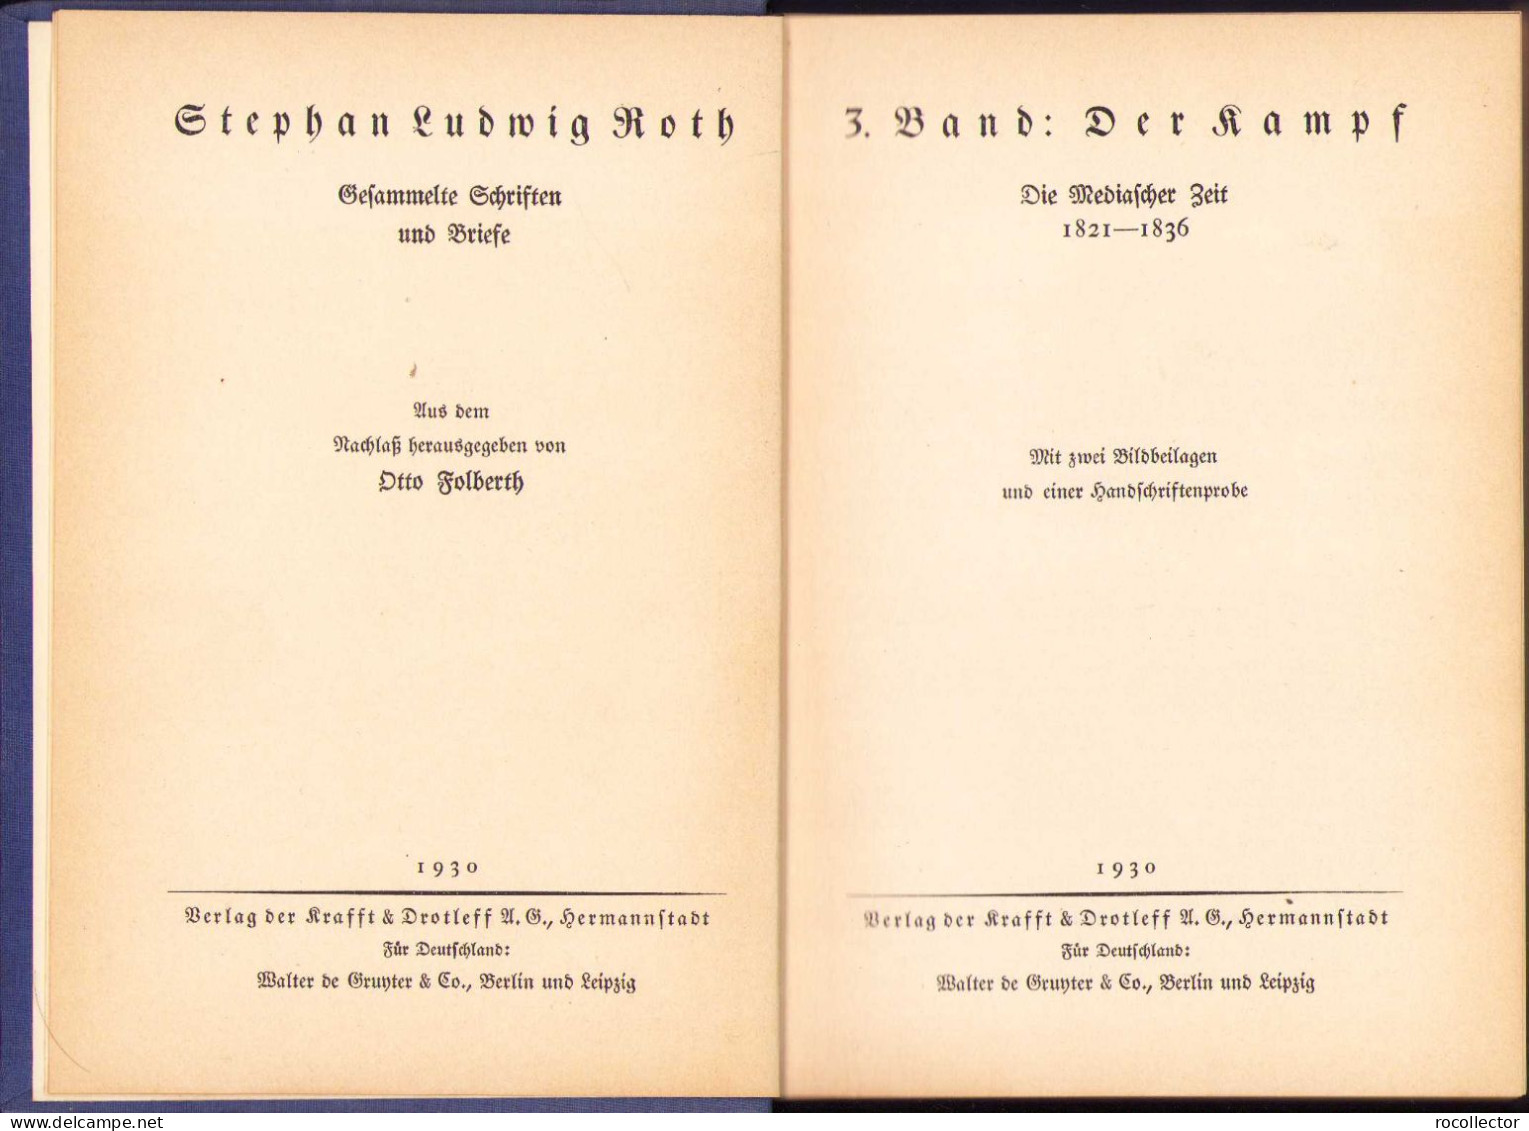 Stephan Ludwig Roth. Die Mediascher Zeit (1821-1836). 3. Band: Der Kampf, 1930, Hermannstadt 154SP - Old Books